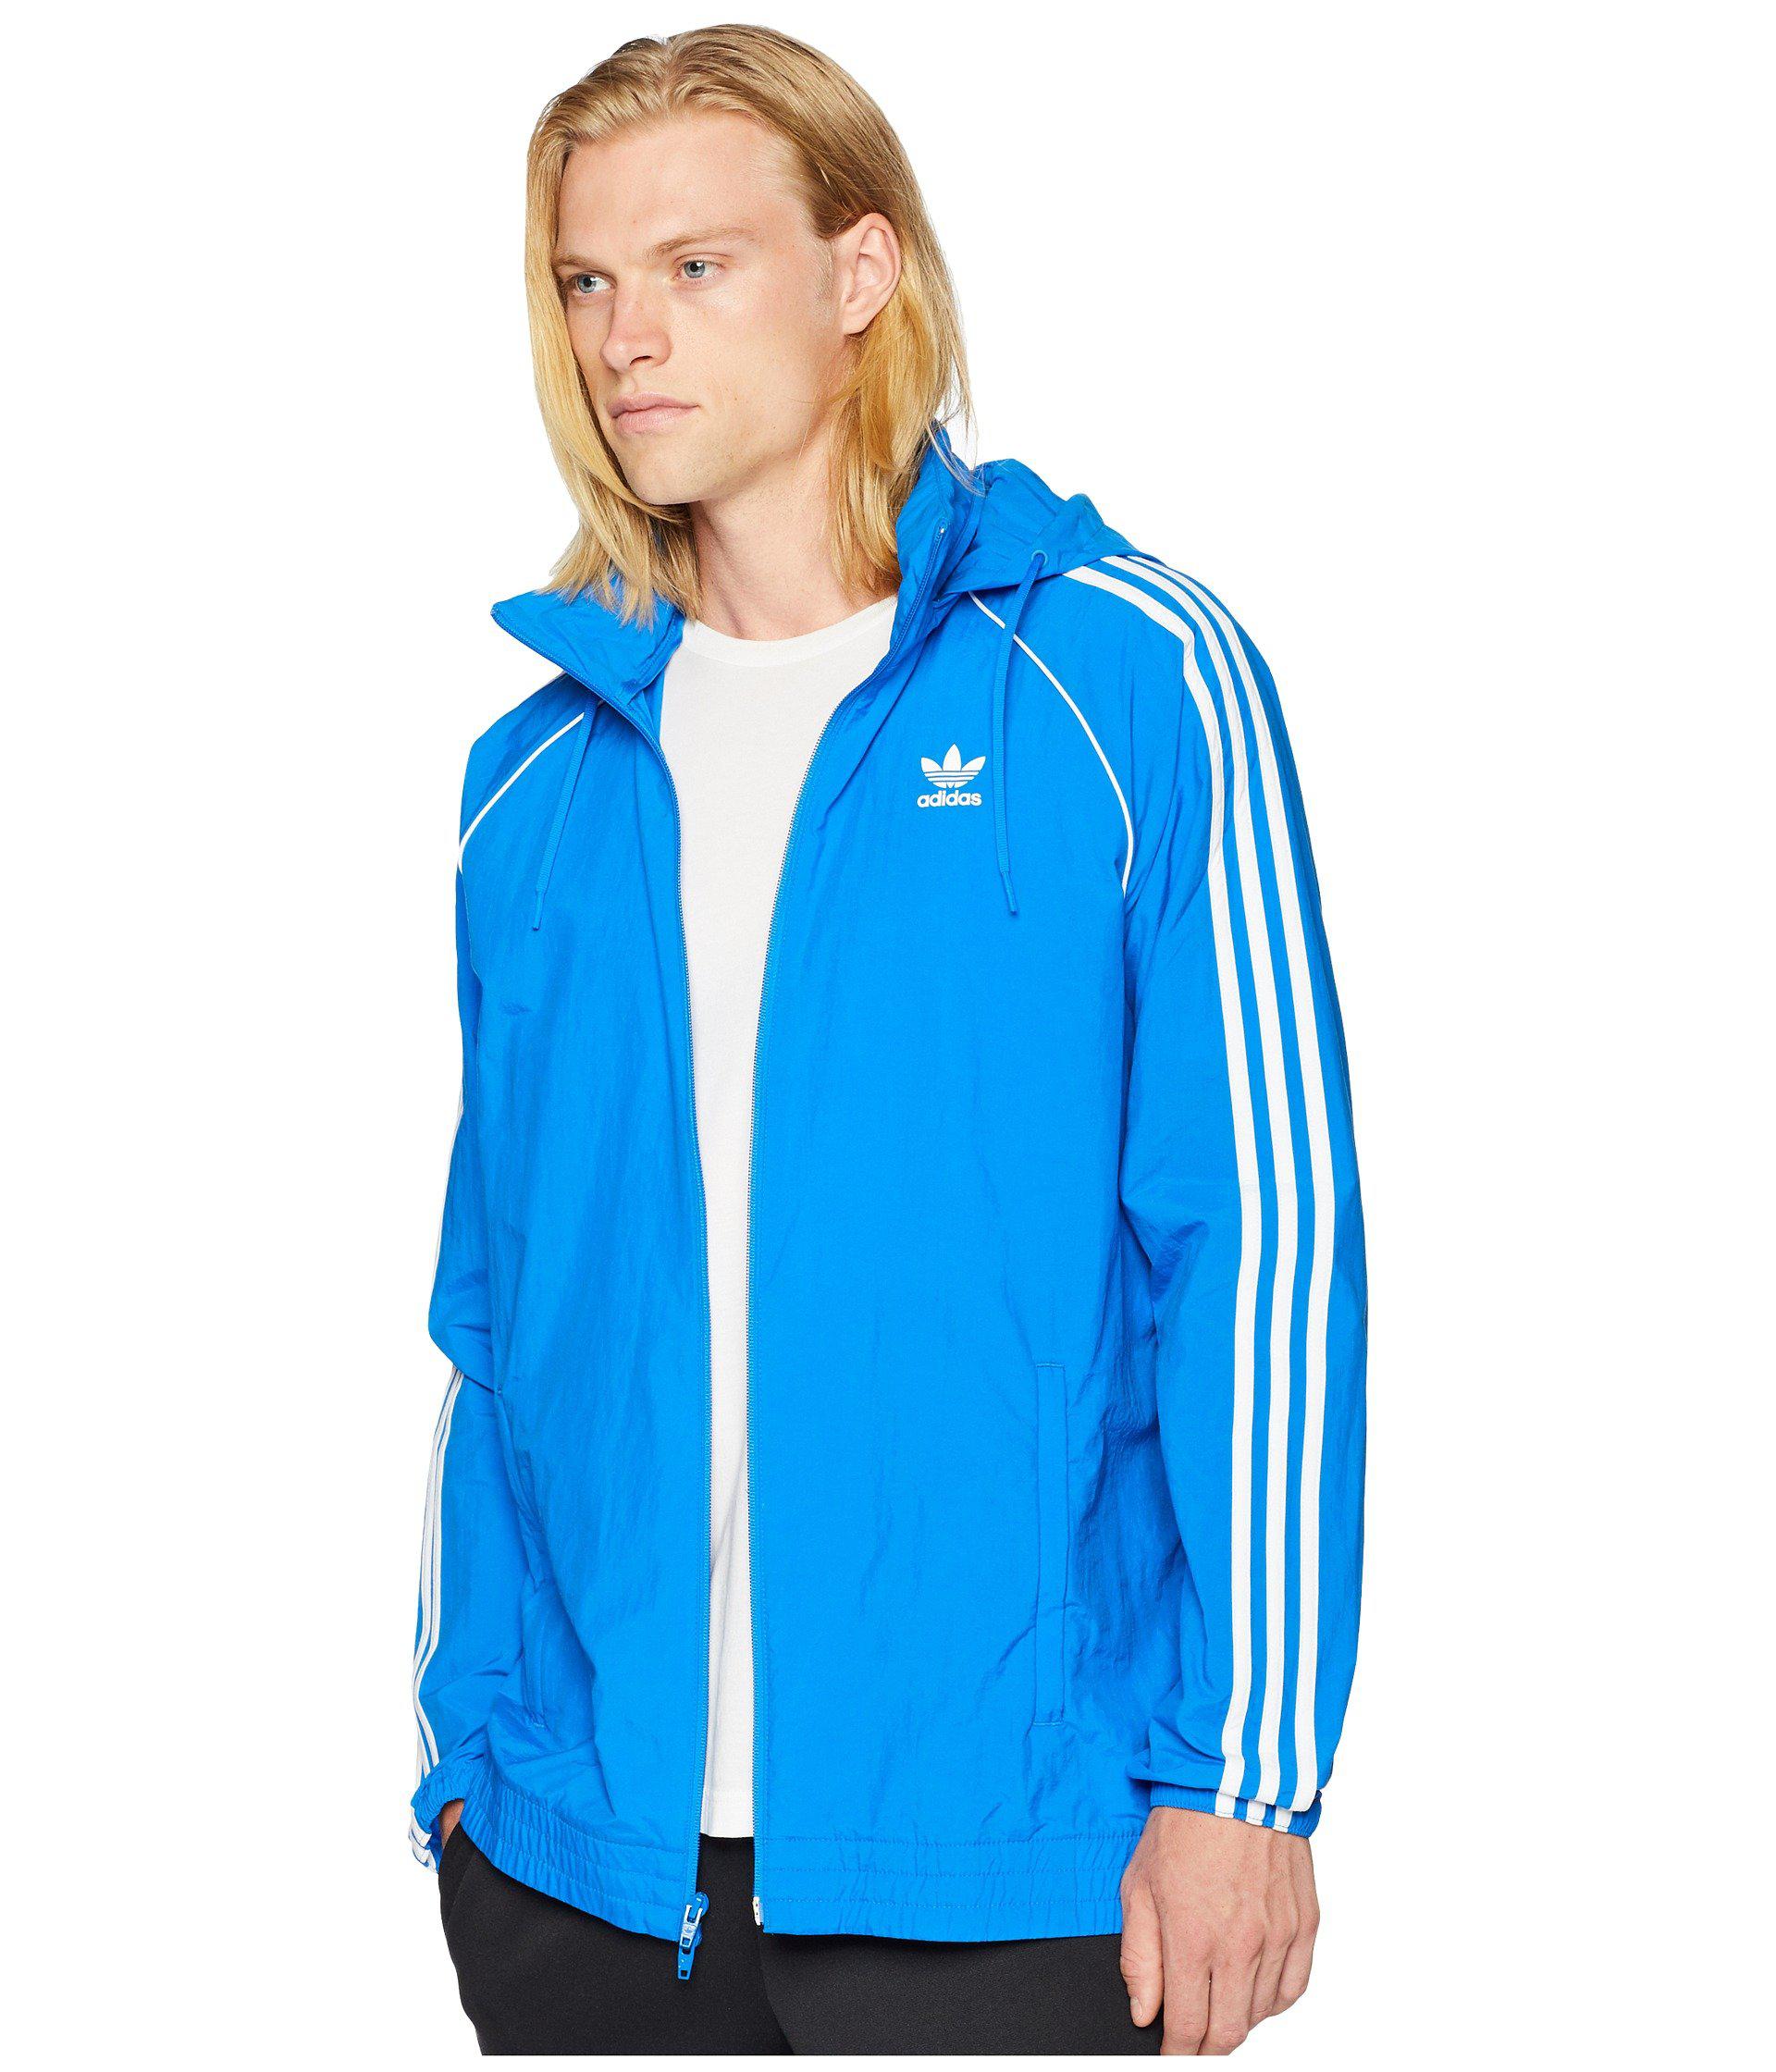 adidas bluebird jacket